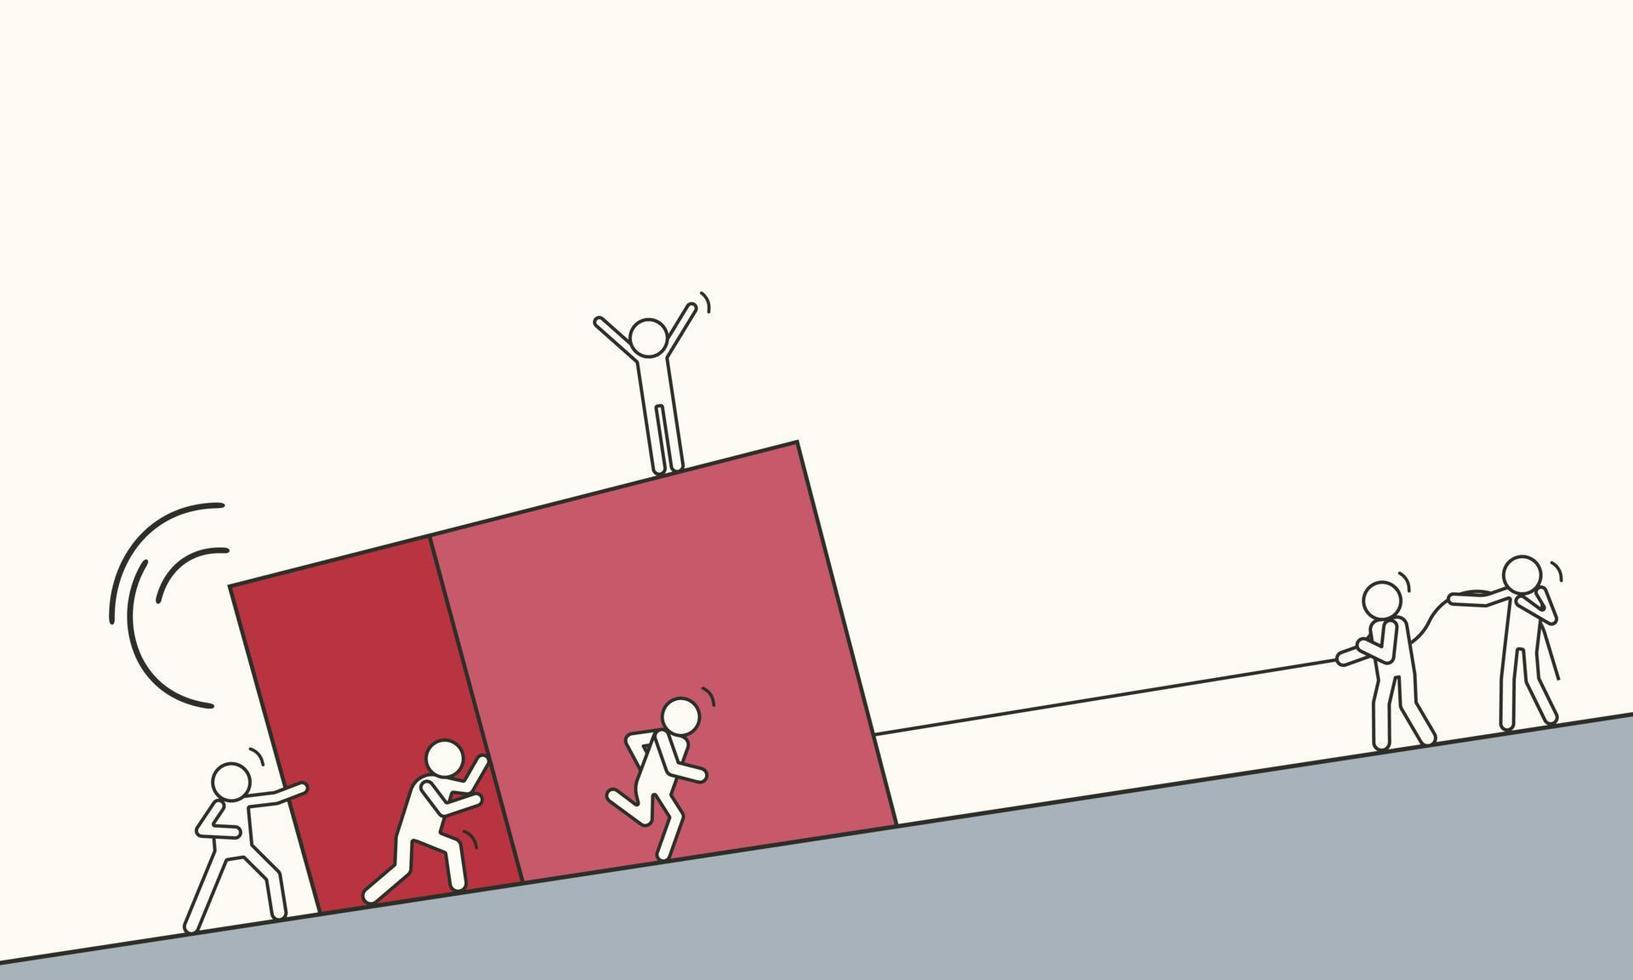 kleine gezeichnete menschen heben gemeinsam einen großen roten würfel den berg hinauf. vektorillustration des teamzusammenhalts vektor